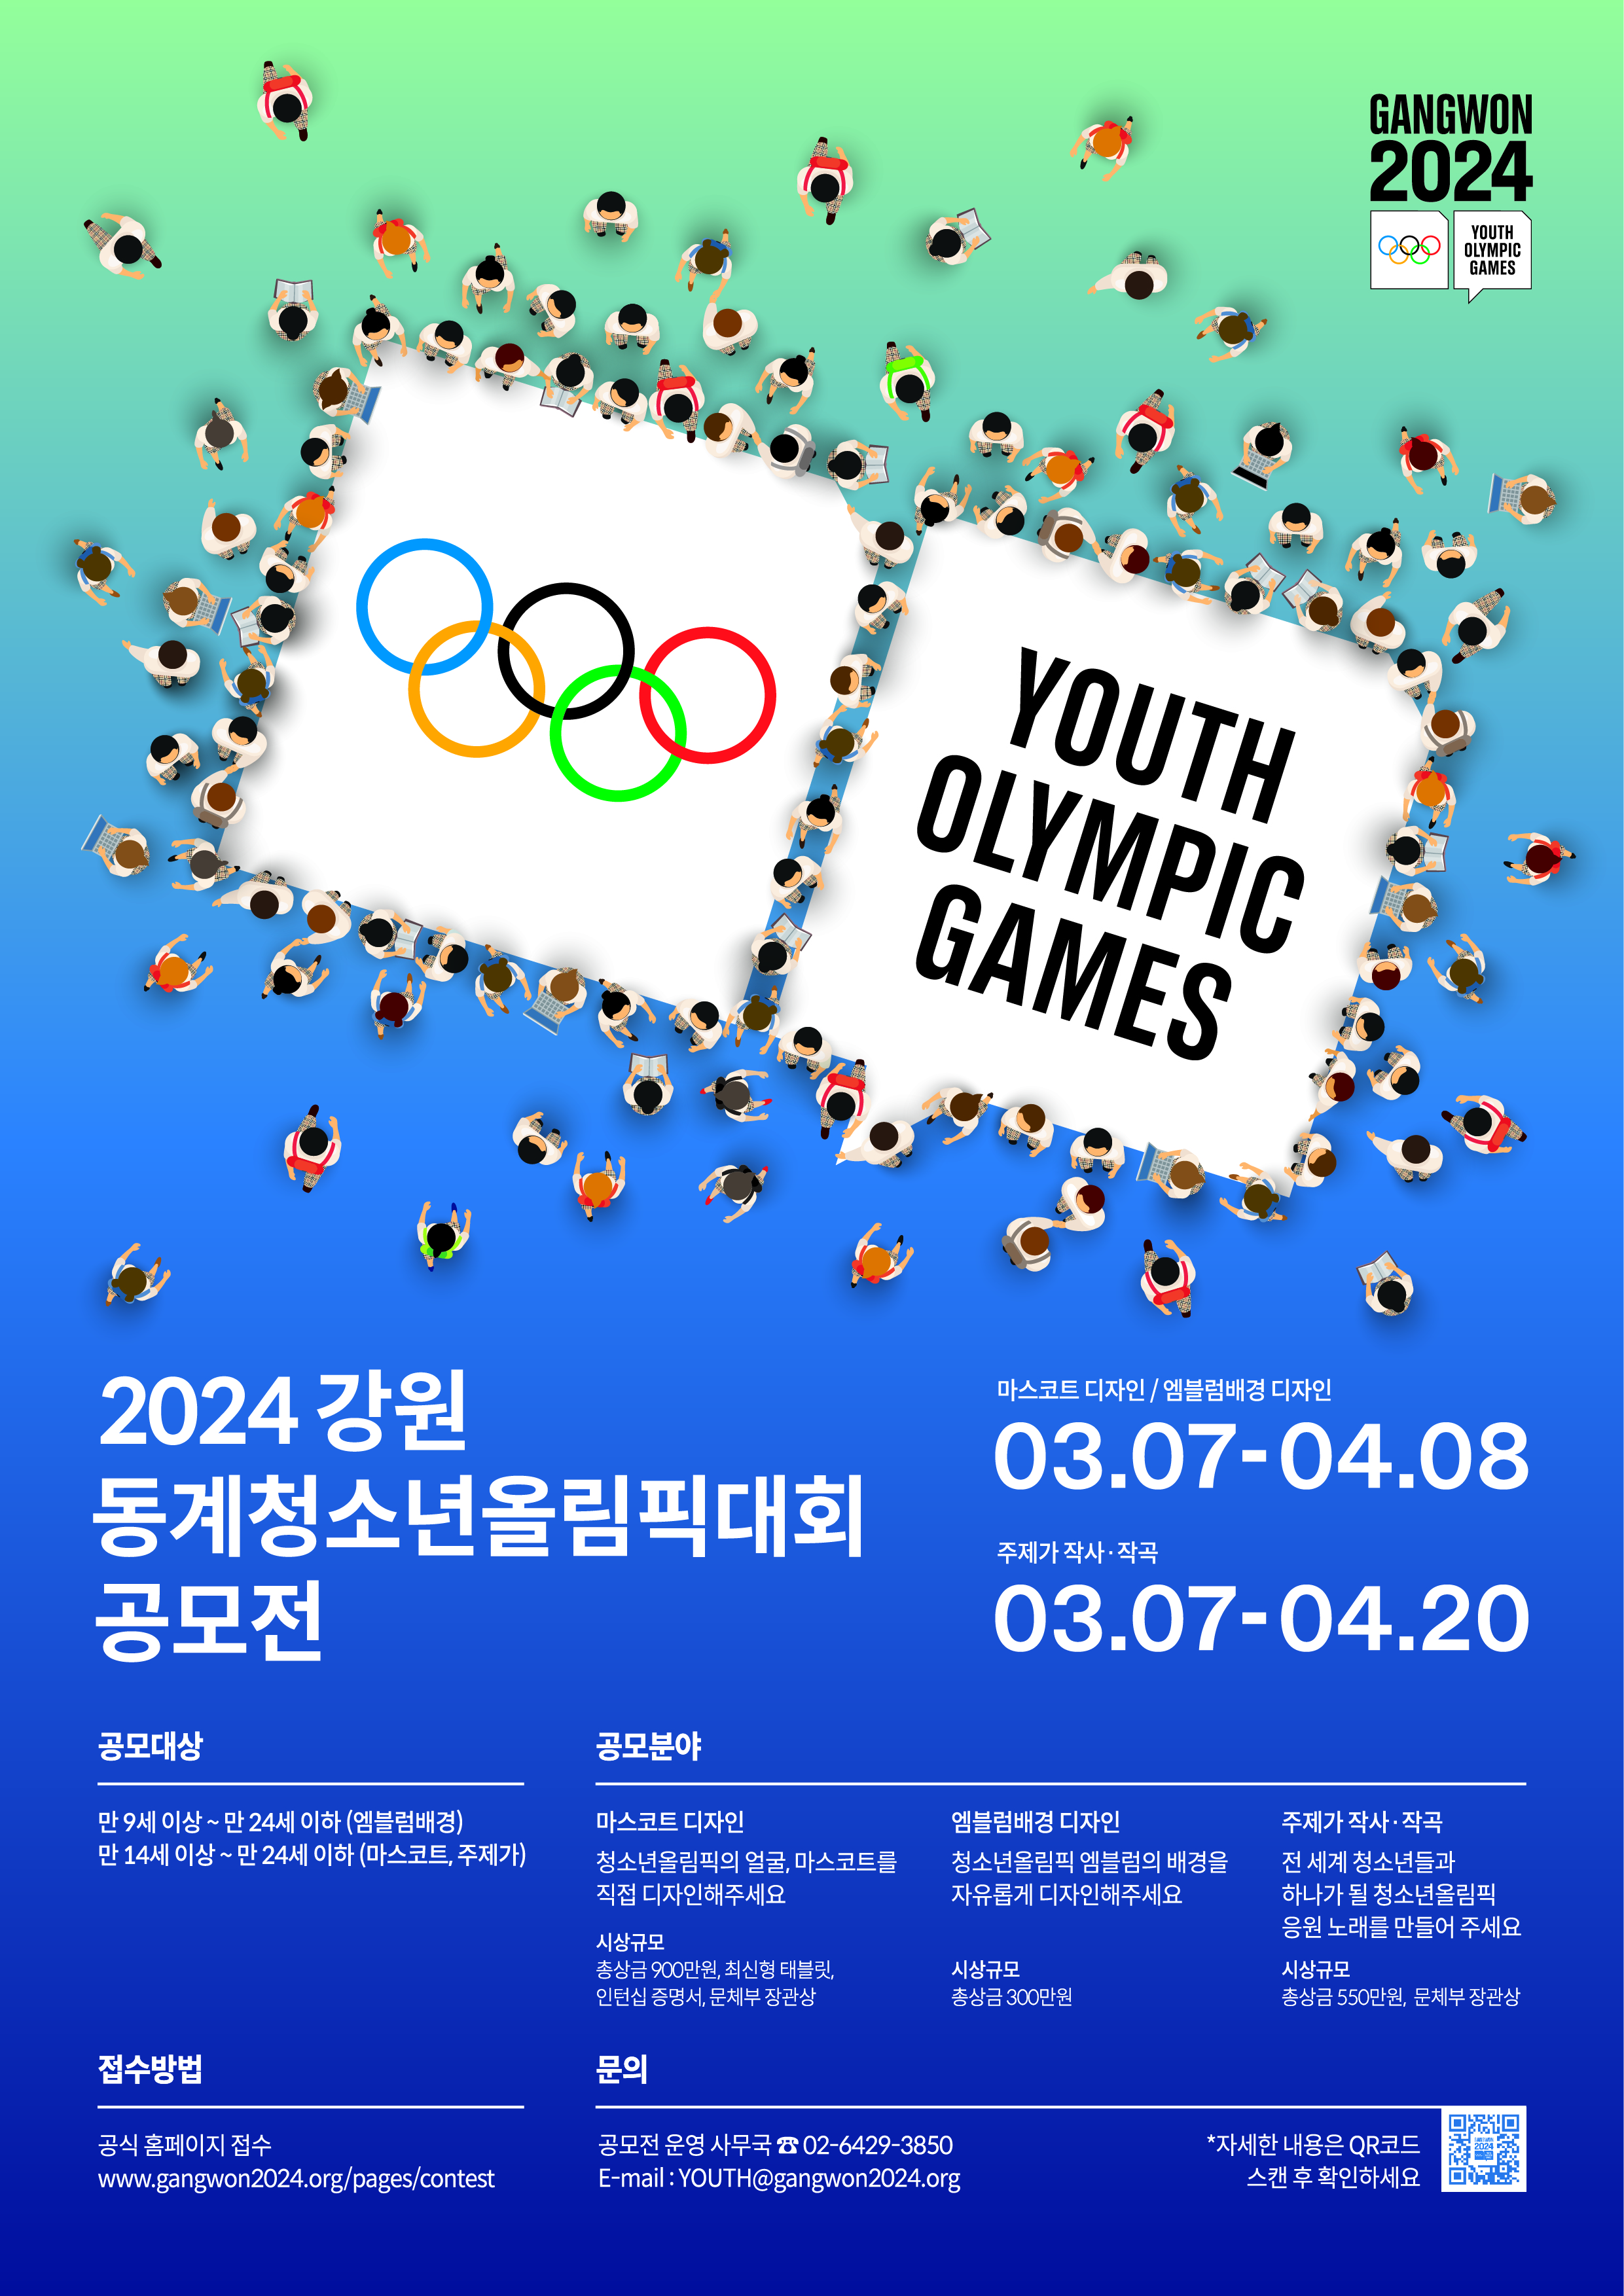 [공모전] 「2024 강원 동계청소년올림픽대회 마스코트, 엠블럼배경, 주제가 공모」안내